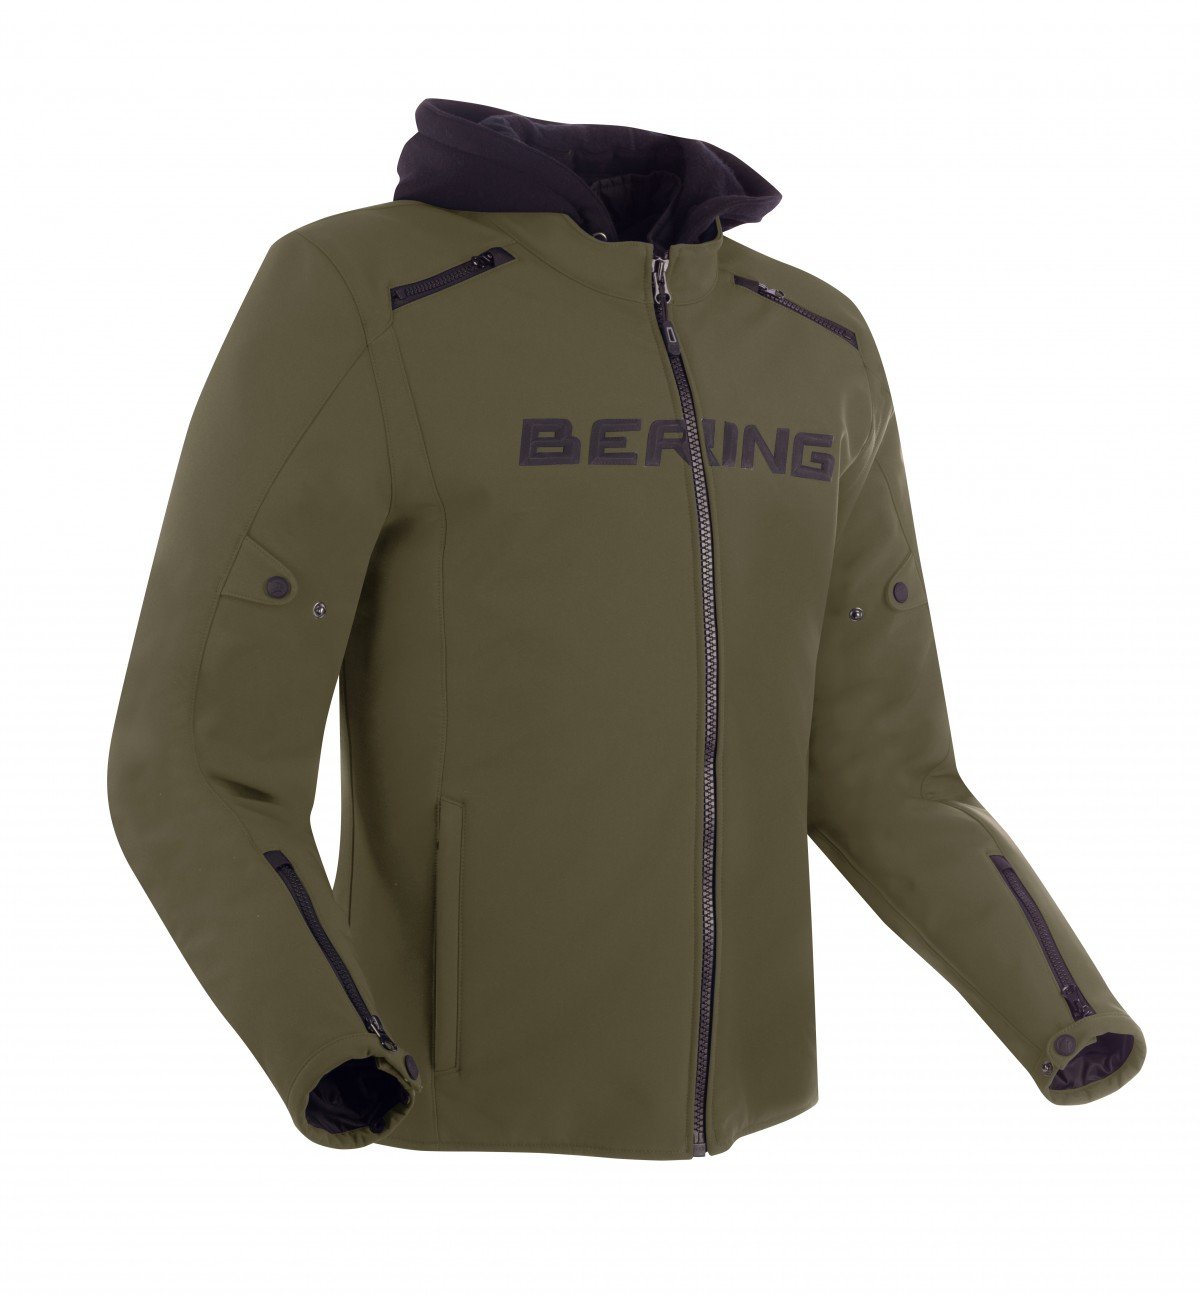 Image of Bering Elite Jacket Khaki Size 2XL ID 3660815170342